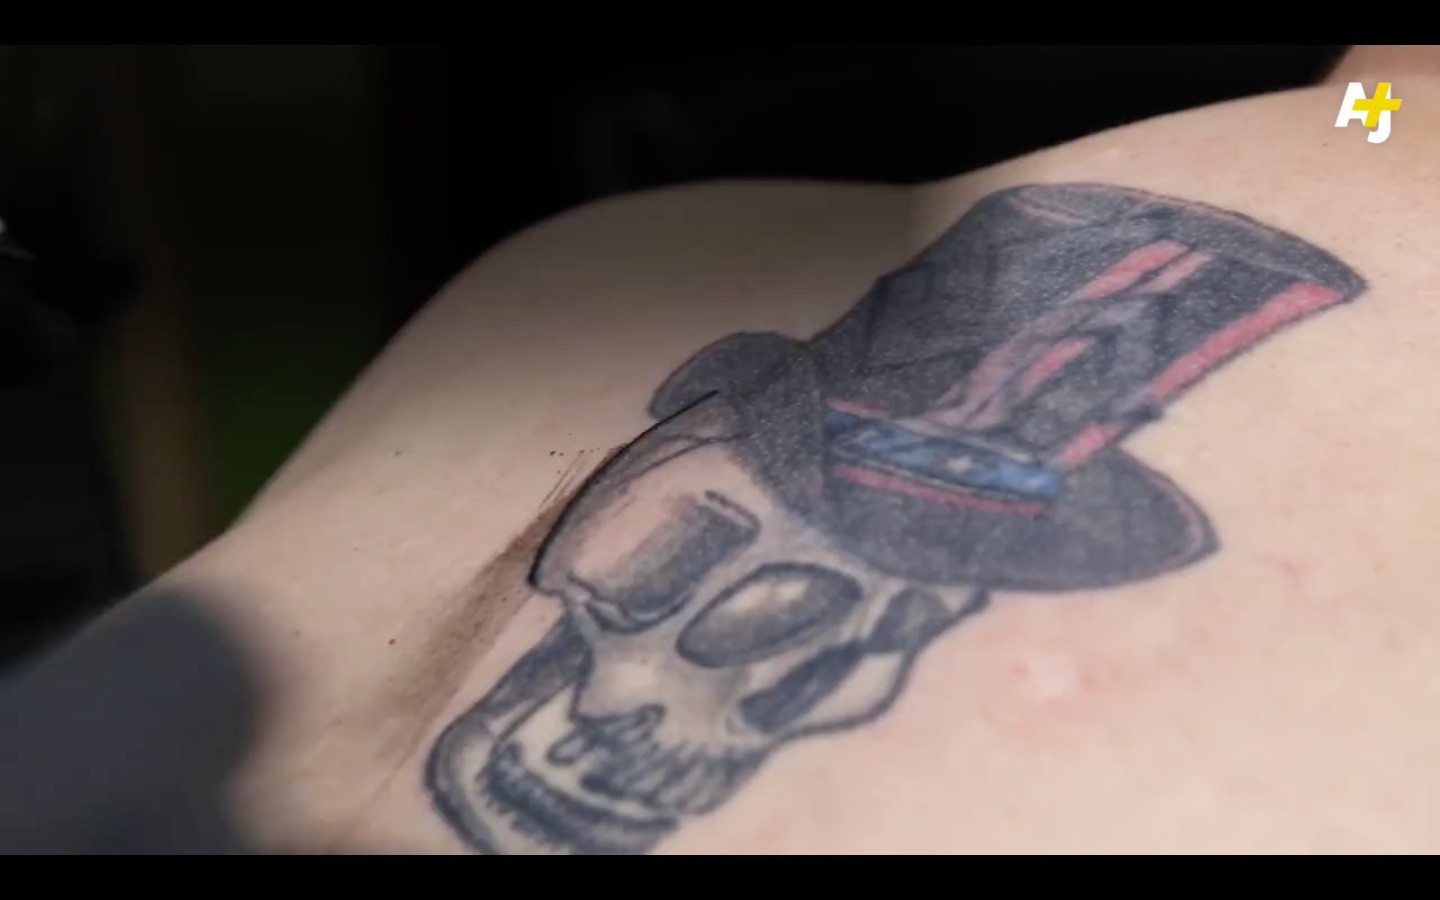 Αυτός ο tattoo artist αφαιρεί ρατσιστικά τατουάζ δωρεάν! [ΒΙΝΤΕΟ]